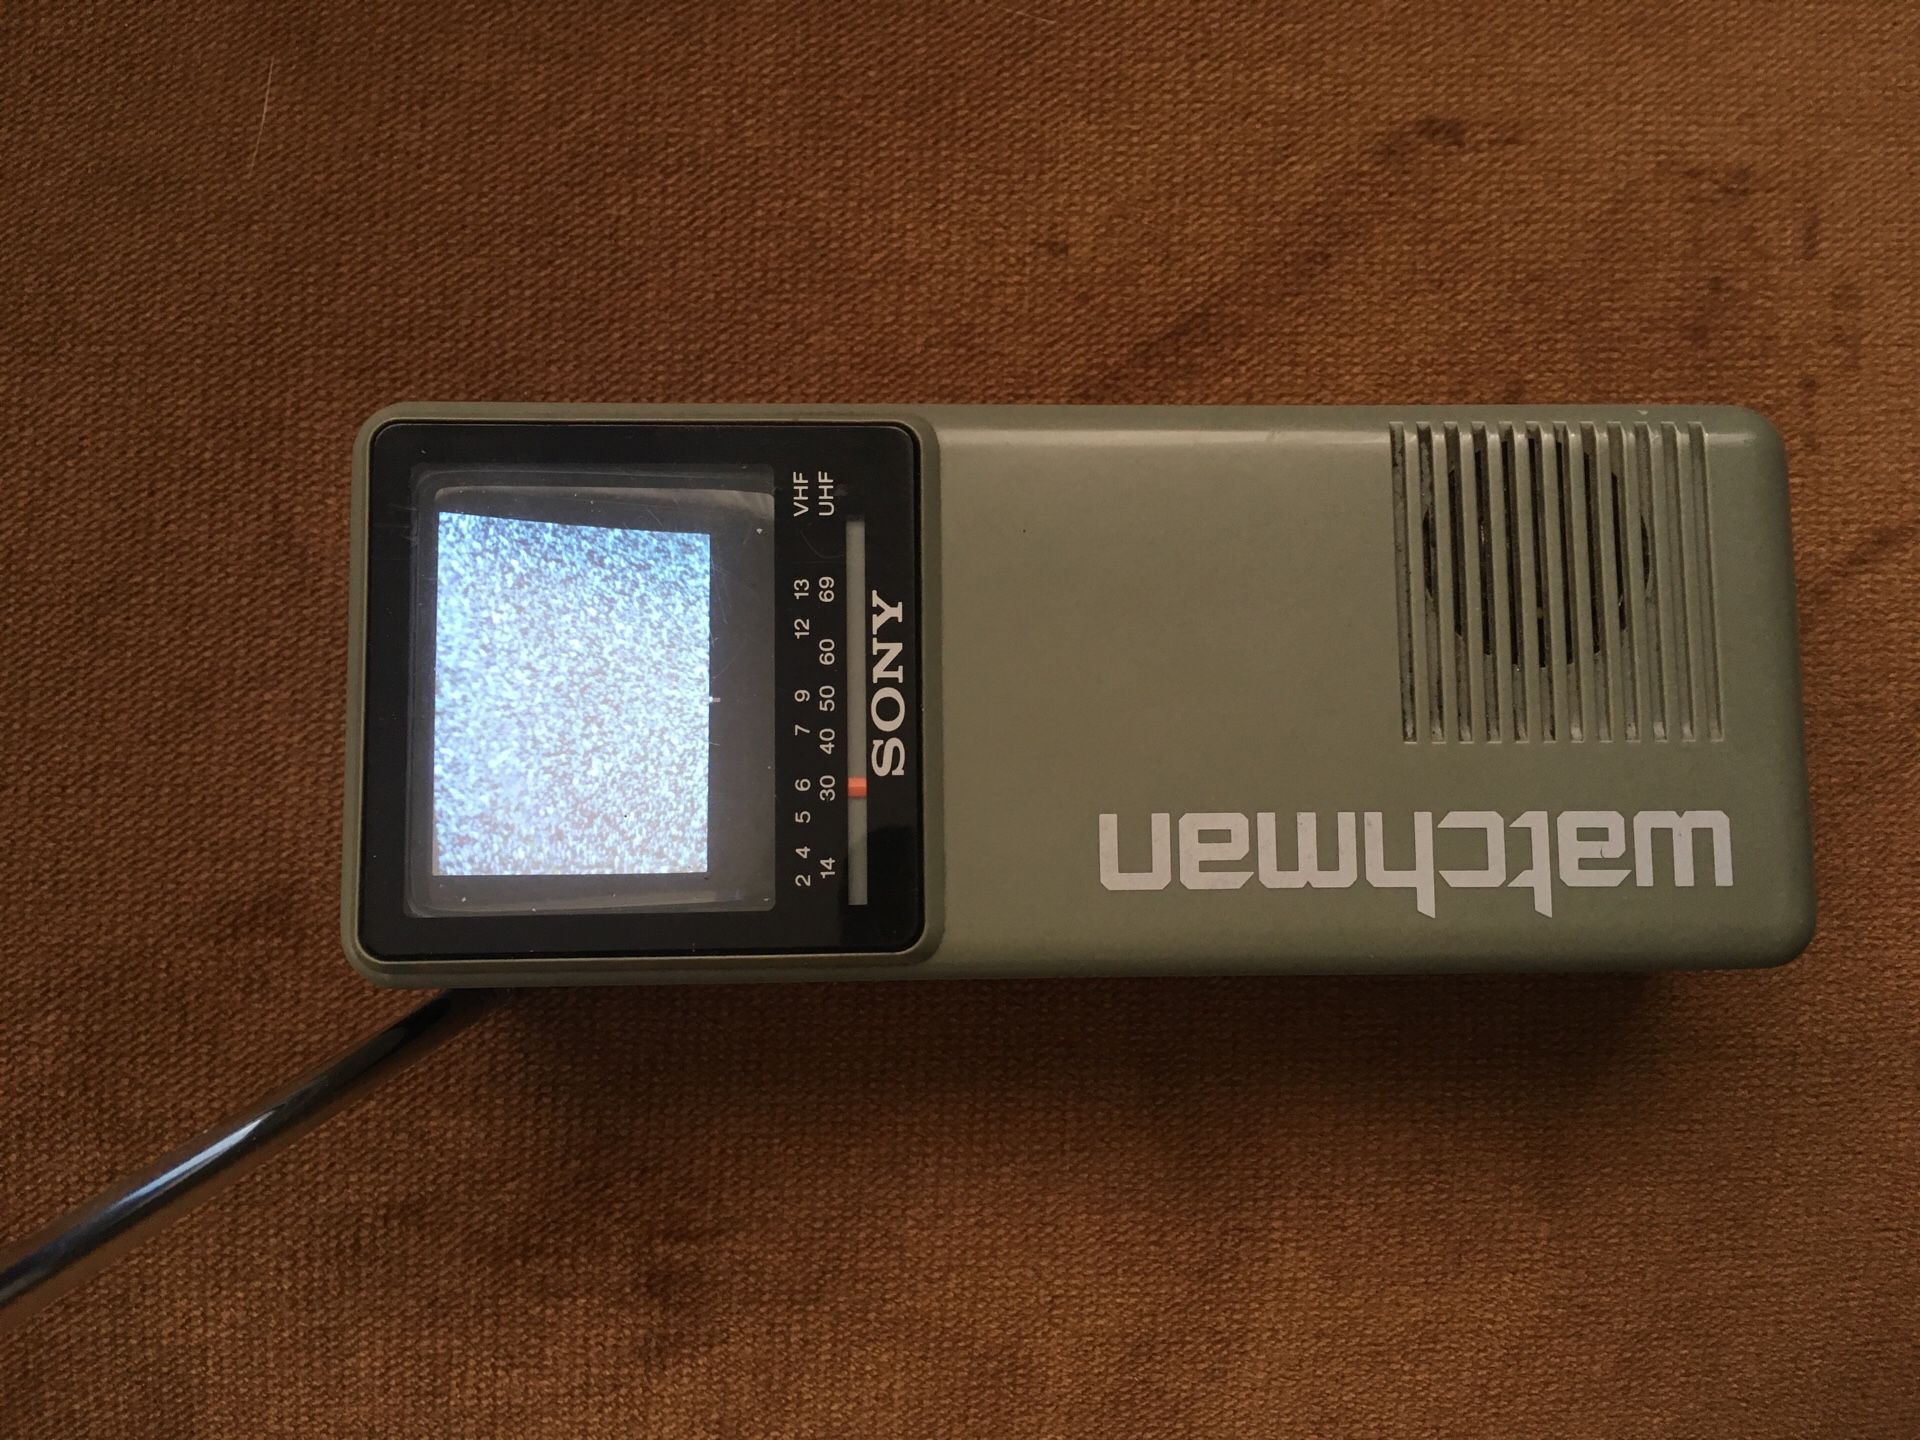 1987 Sony Watchman handheld TV